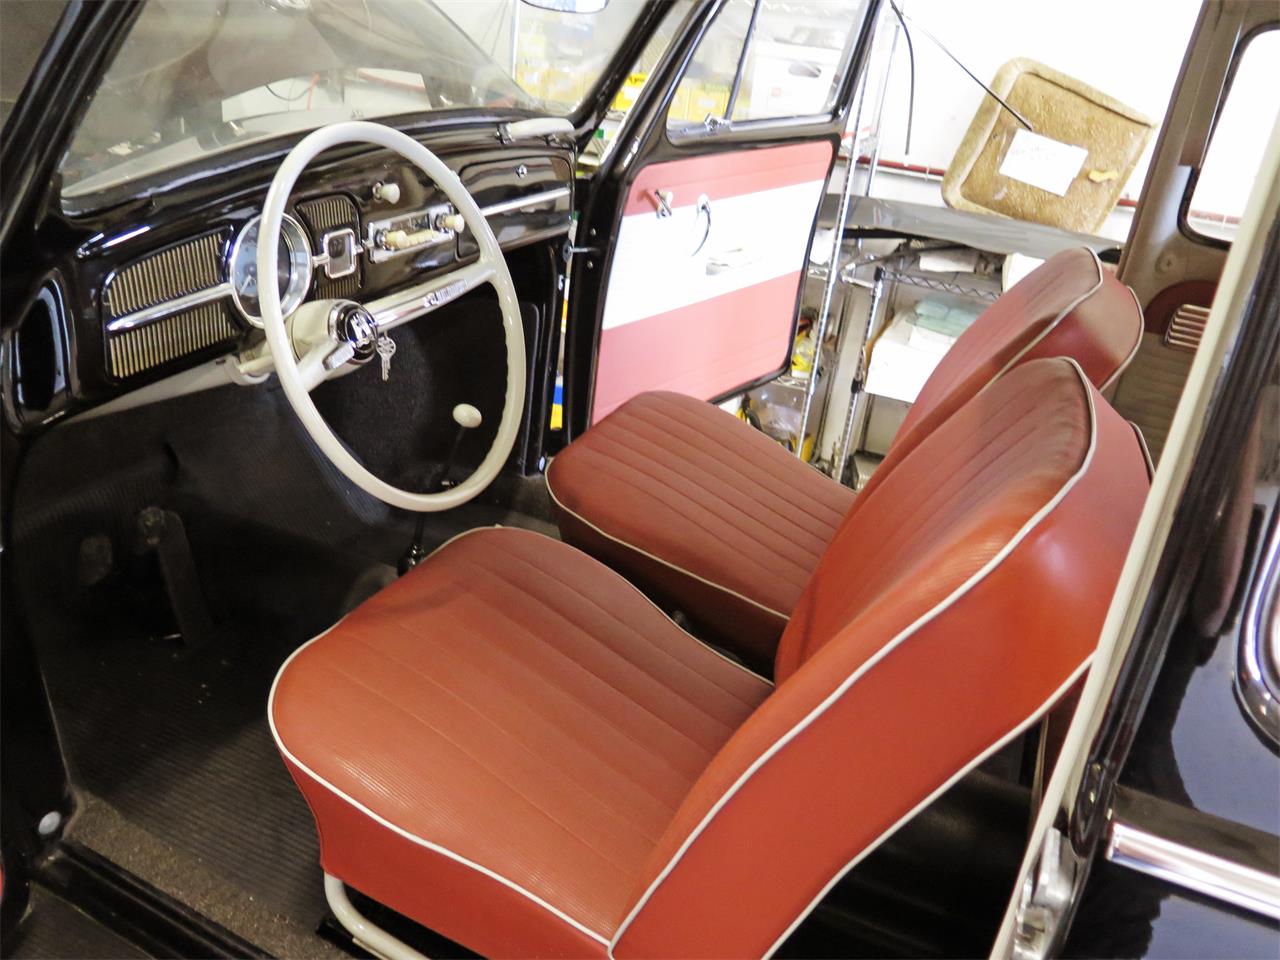 Volkswagen Fusca 1964. Foto: Reprodução - Classiccars.com